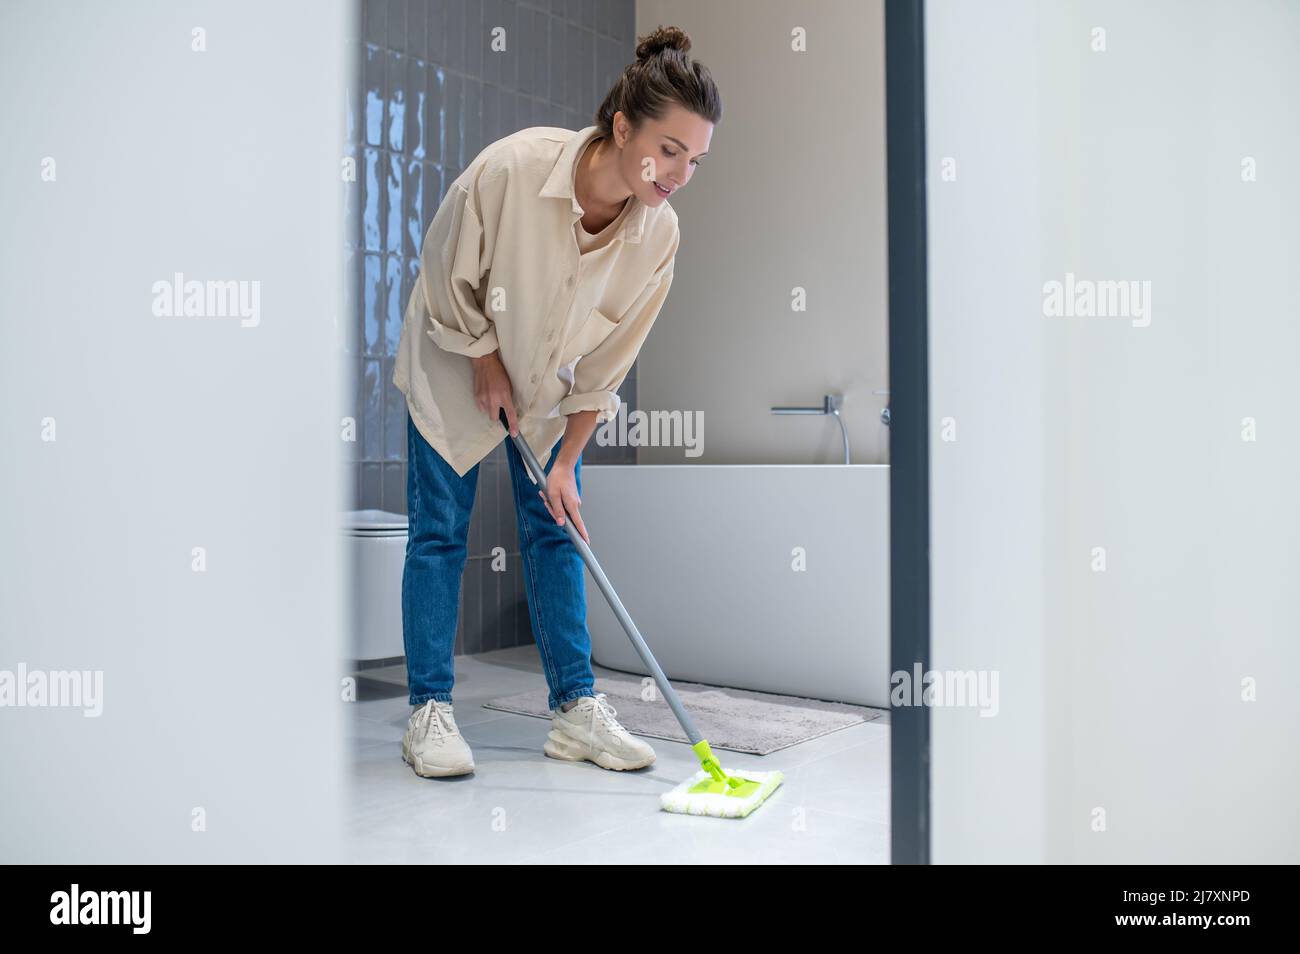 Une jeune femme nettoie le sol à la maison Banque D'Images